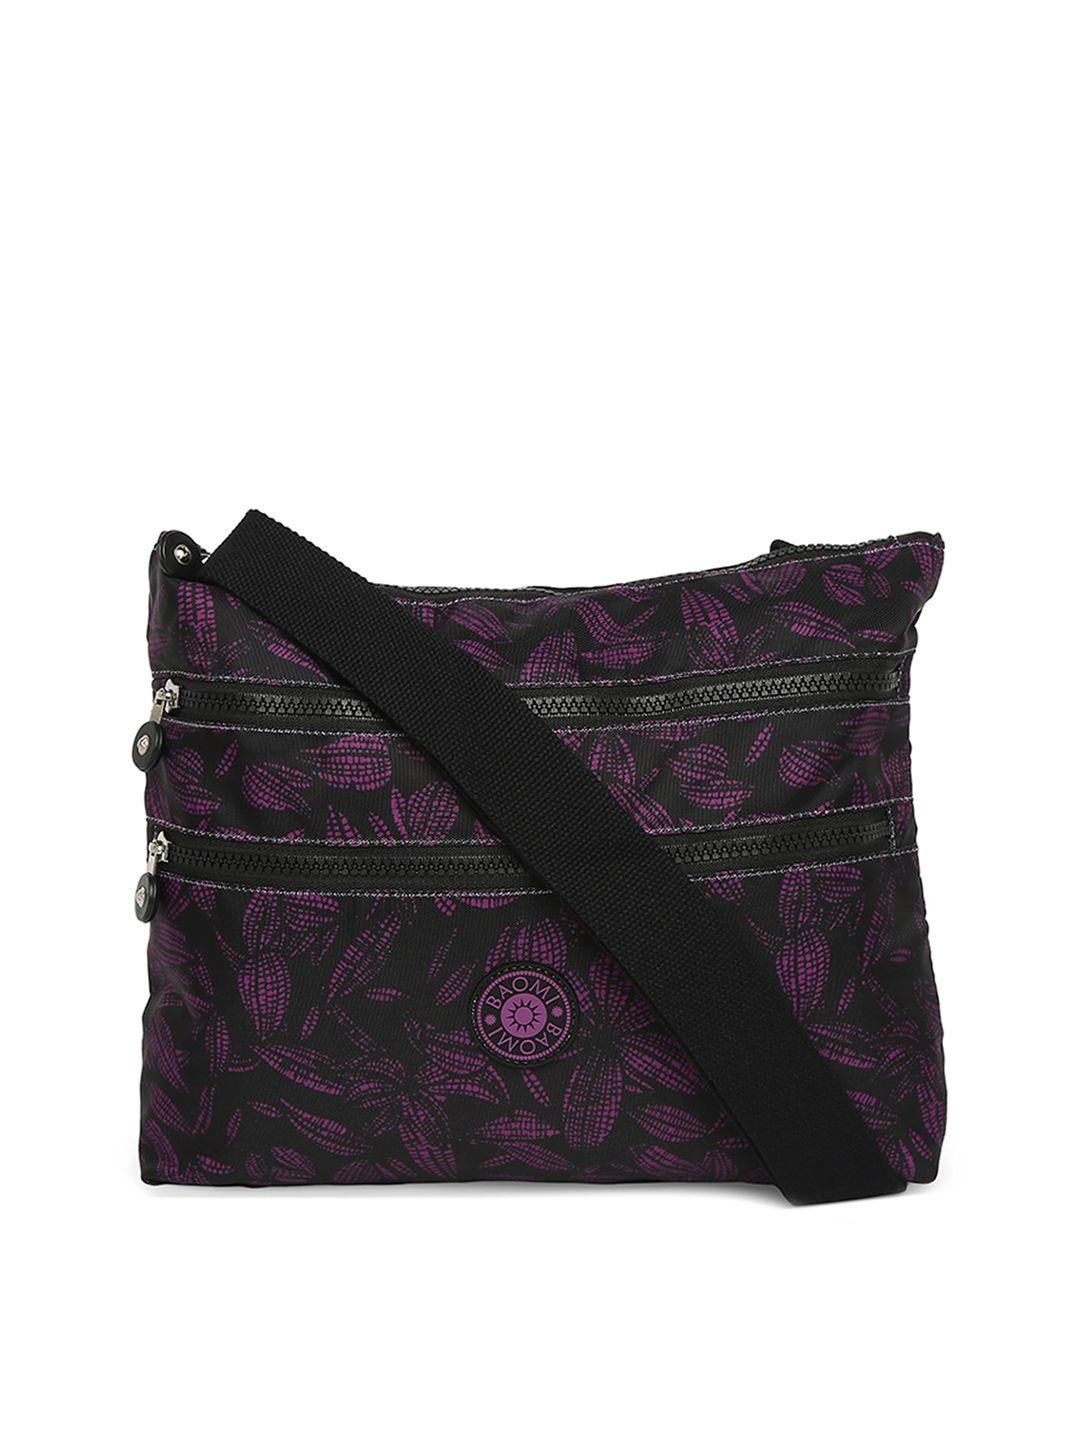 baomi black & purple floral printed oversized sling bag